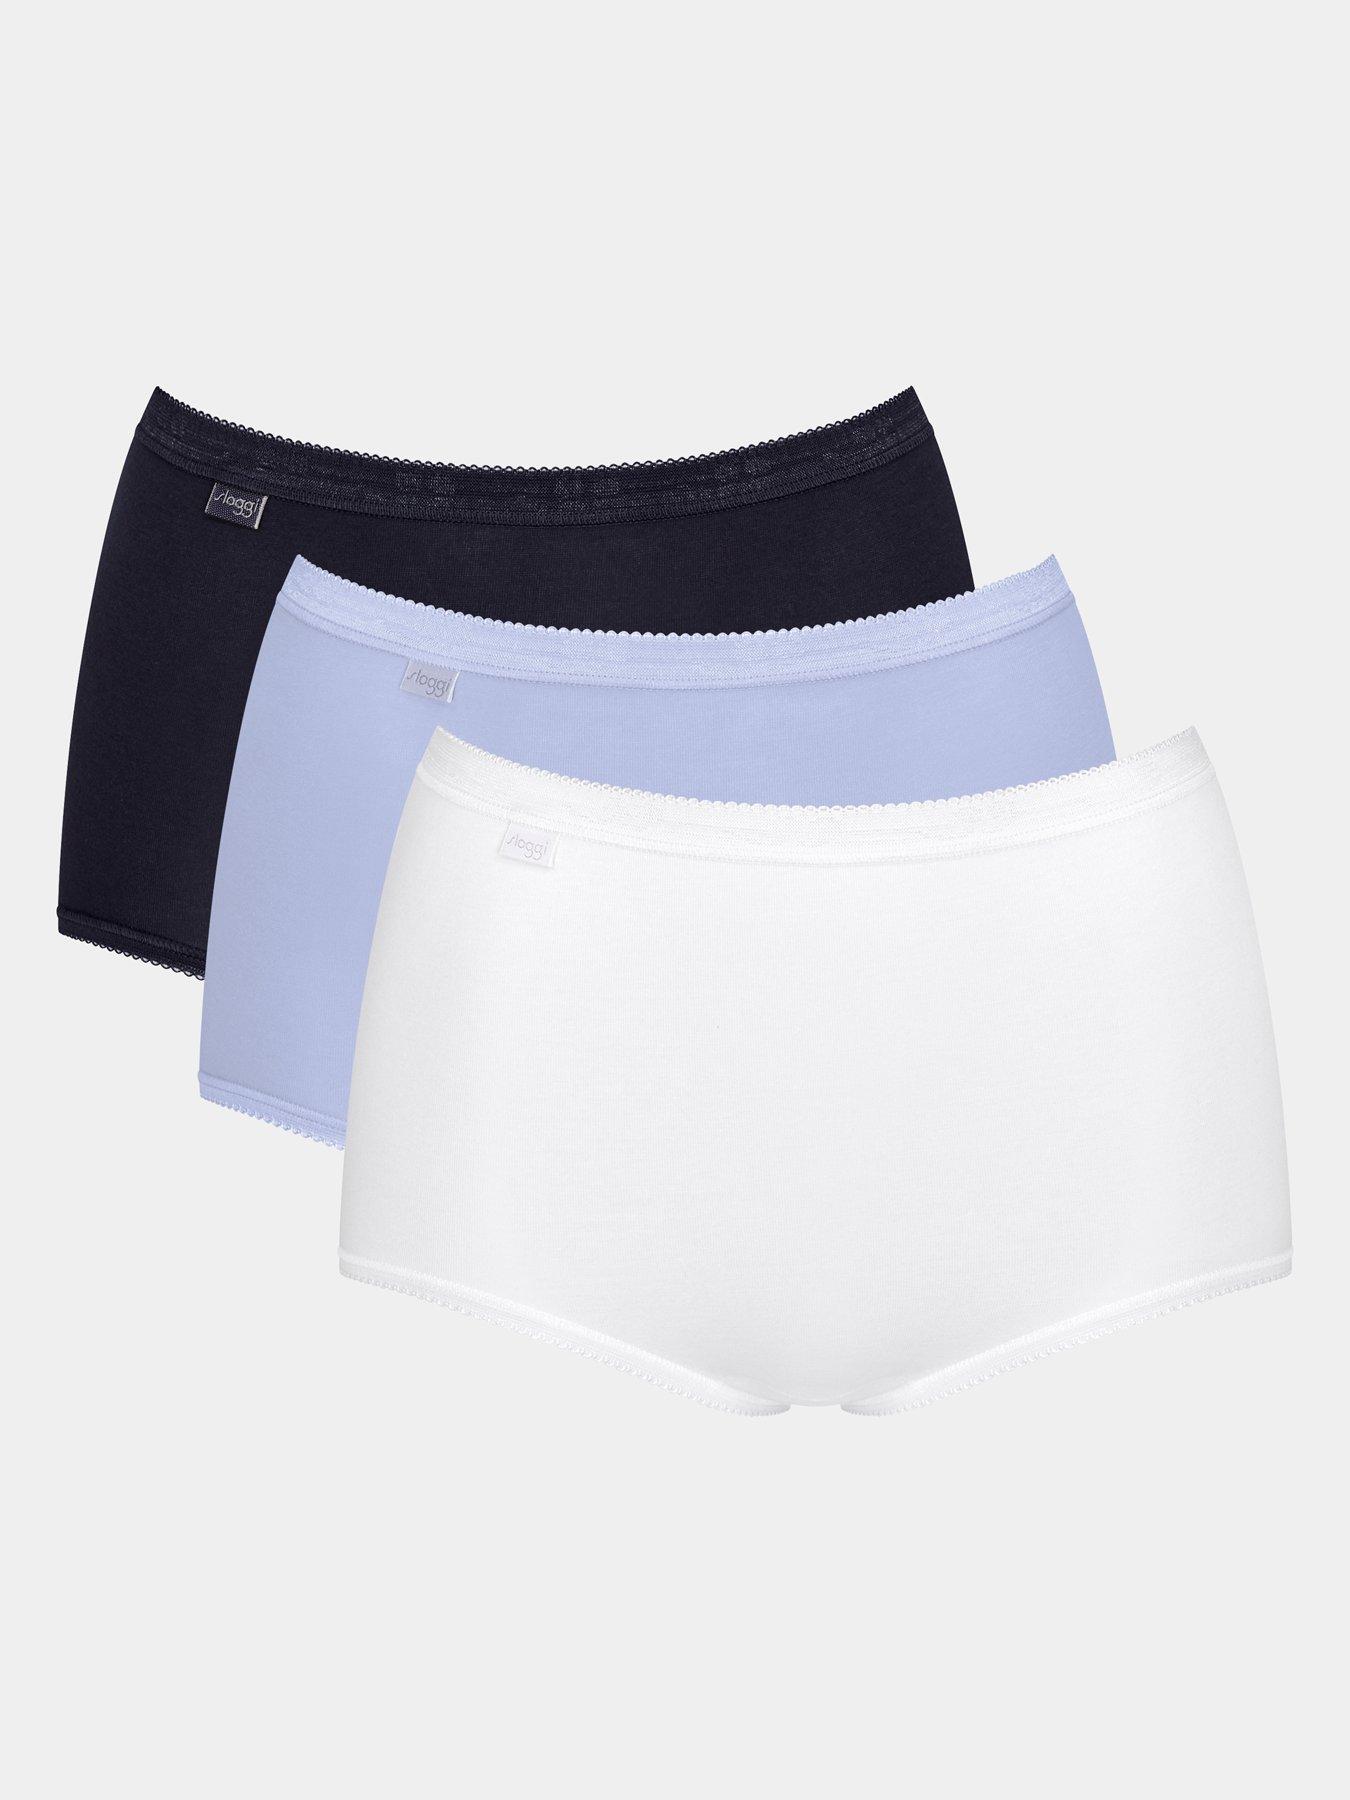 Sloggi Basic+ Maxi Brief Ladies Cotton Rich Full Knickers Underwear (4 Pack)